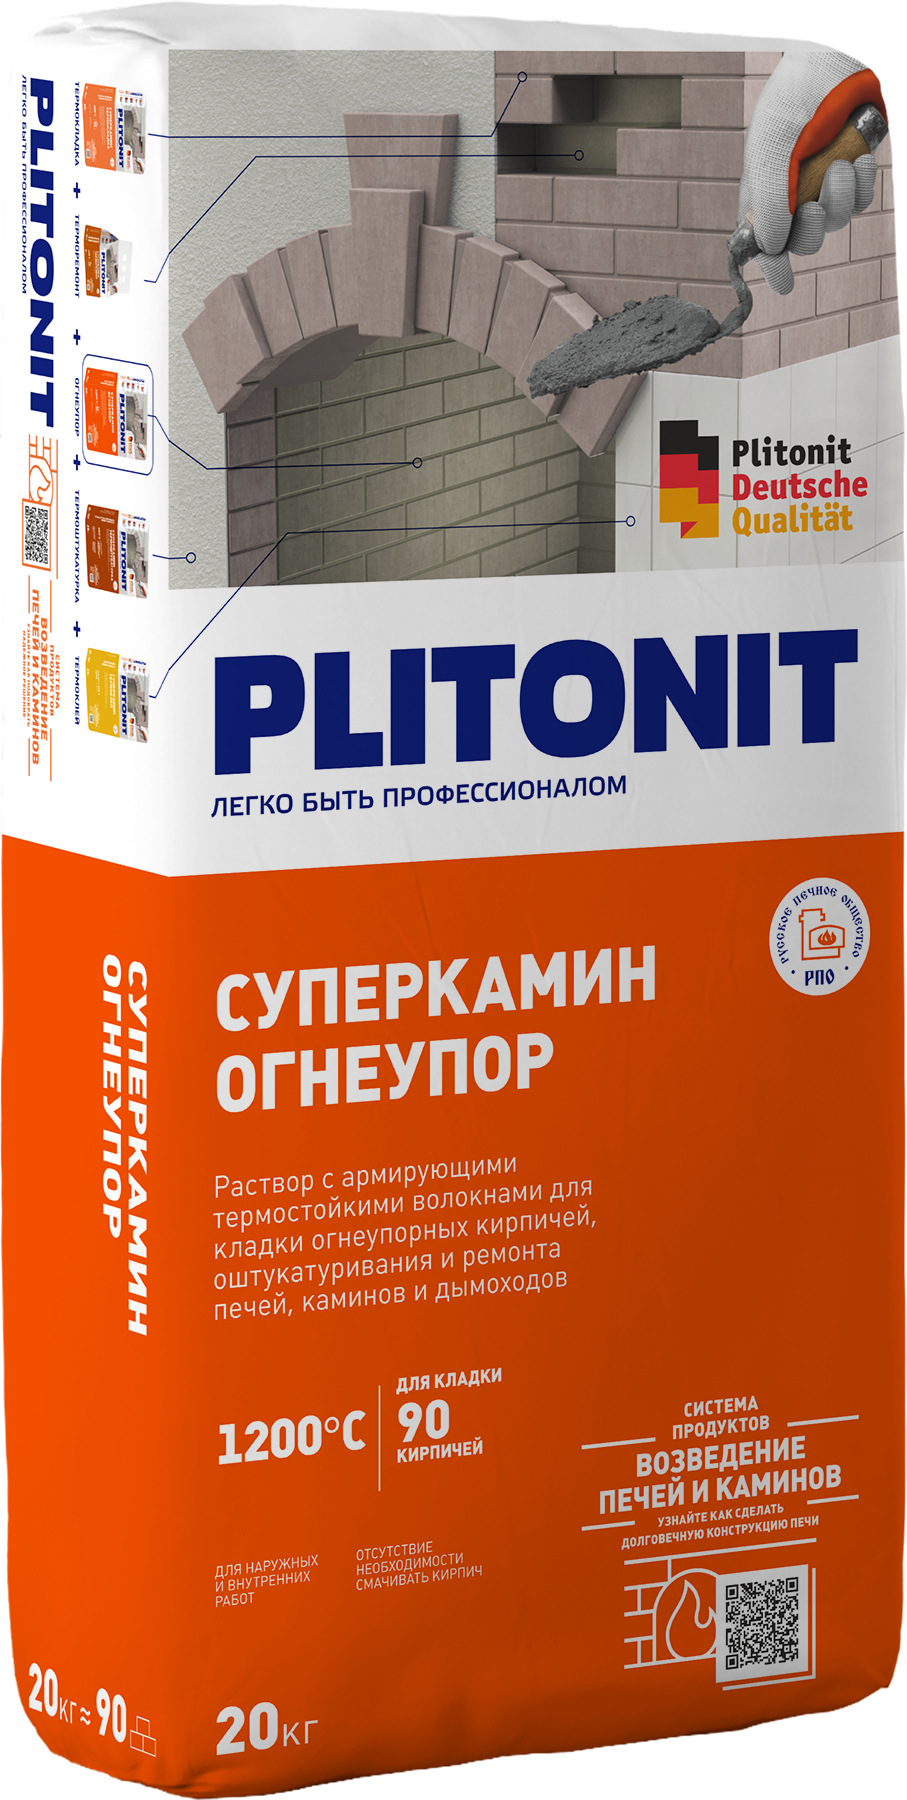 Смеси для устройства печей и каминов «Суперкамин» PLITONIT СуперКамин  ОгнеУпор — Plitonit.ru